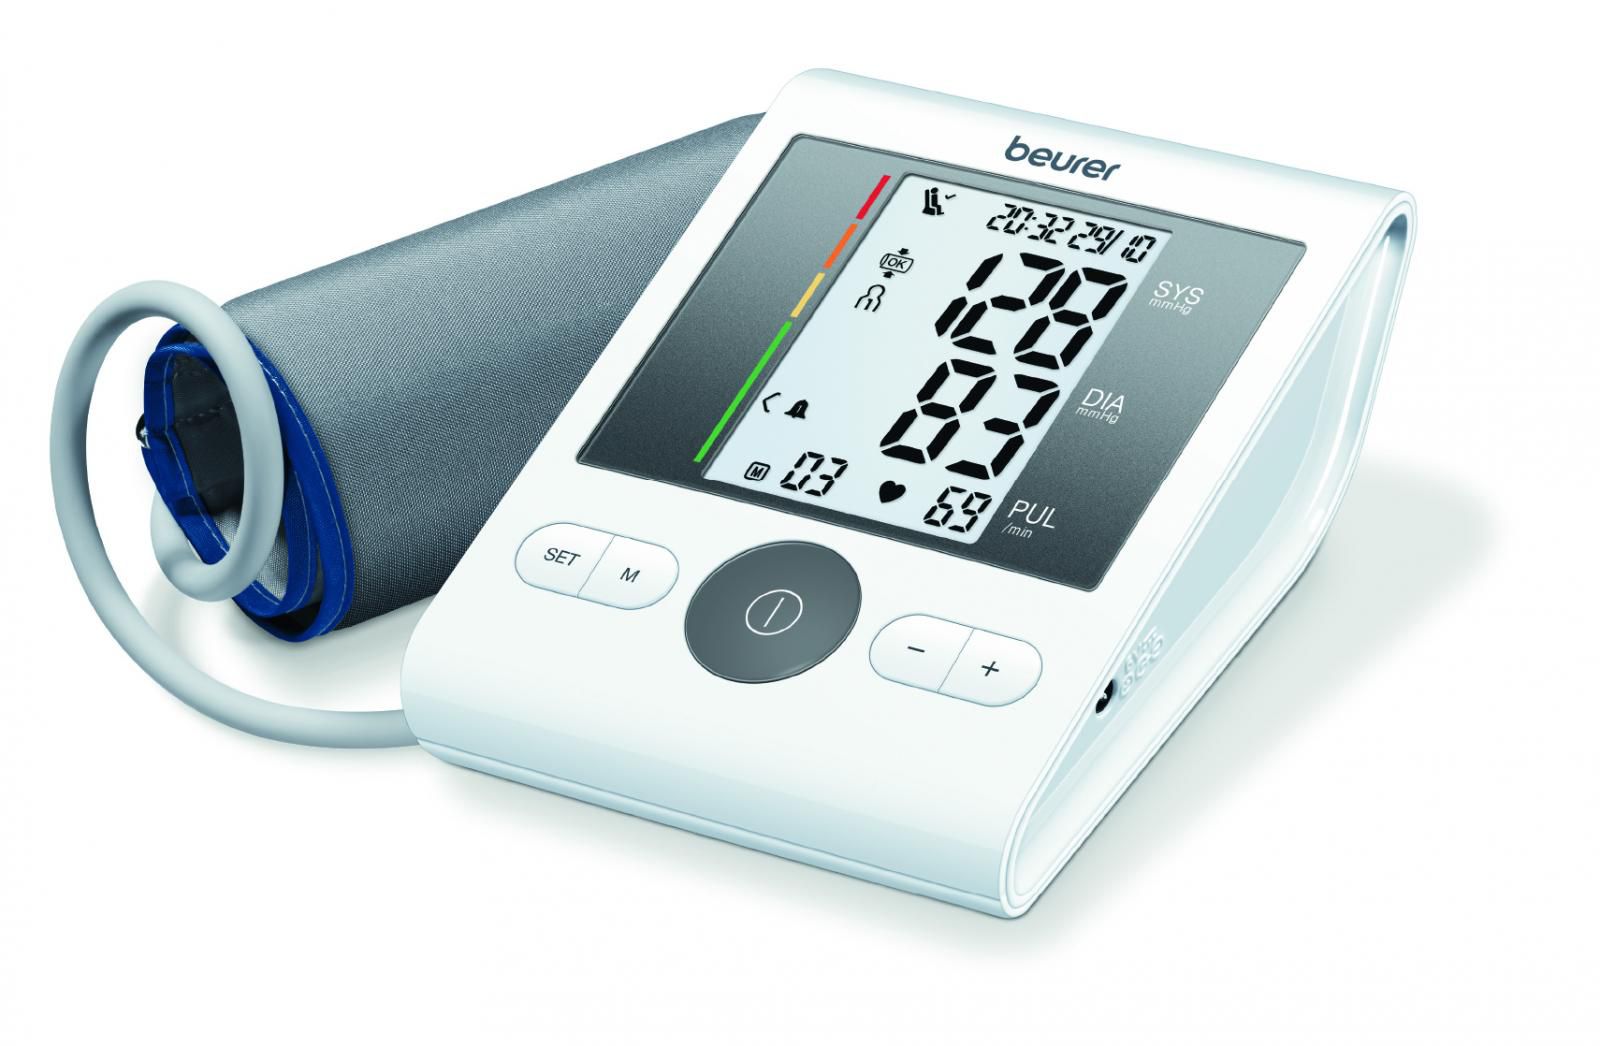 Das bewährte Oberarm-Blutdruckmessgerät BM 28 für Ihre Gesundheit!